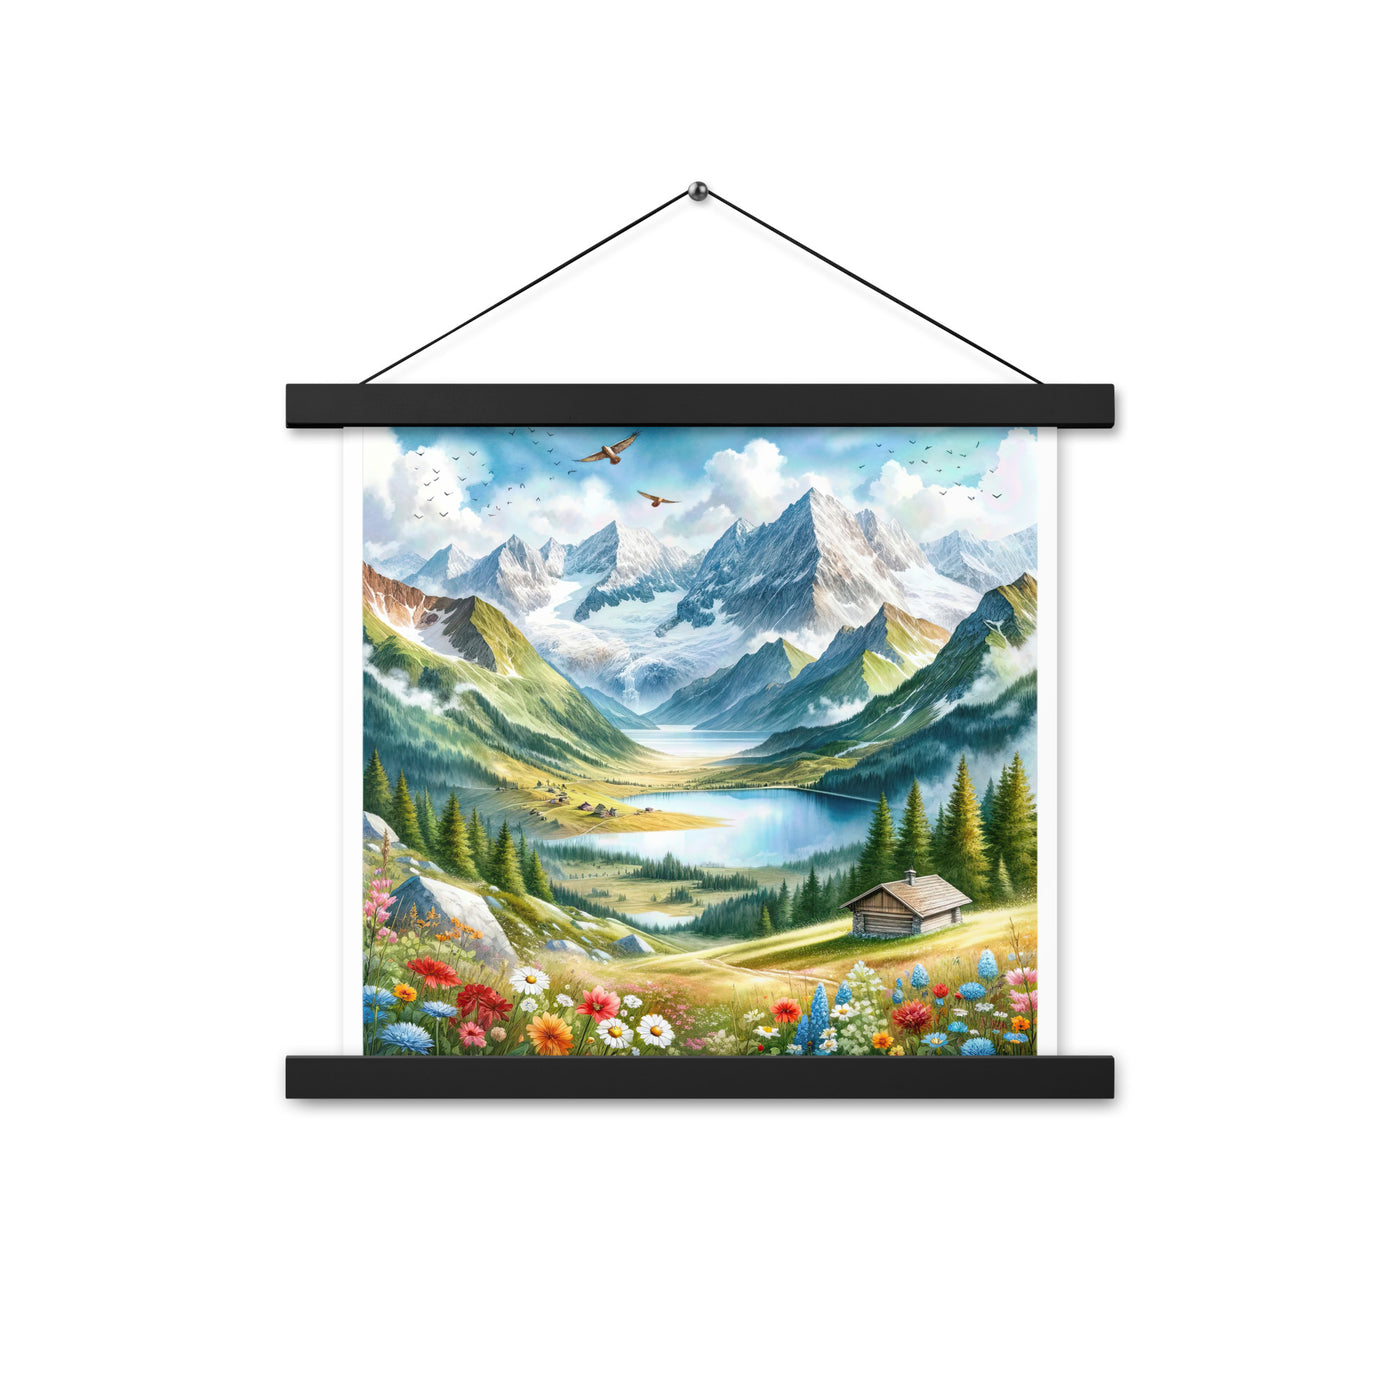 Quadratisches Aquarell der Alpen, Berge mit schneebedeckten Spitzen - Premium Poster mit Aufhängung berge xxx yyy zzz 35.6 x 35.6 cm